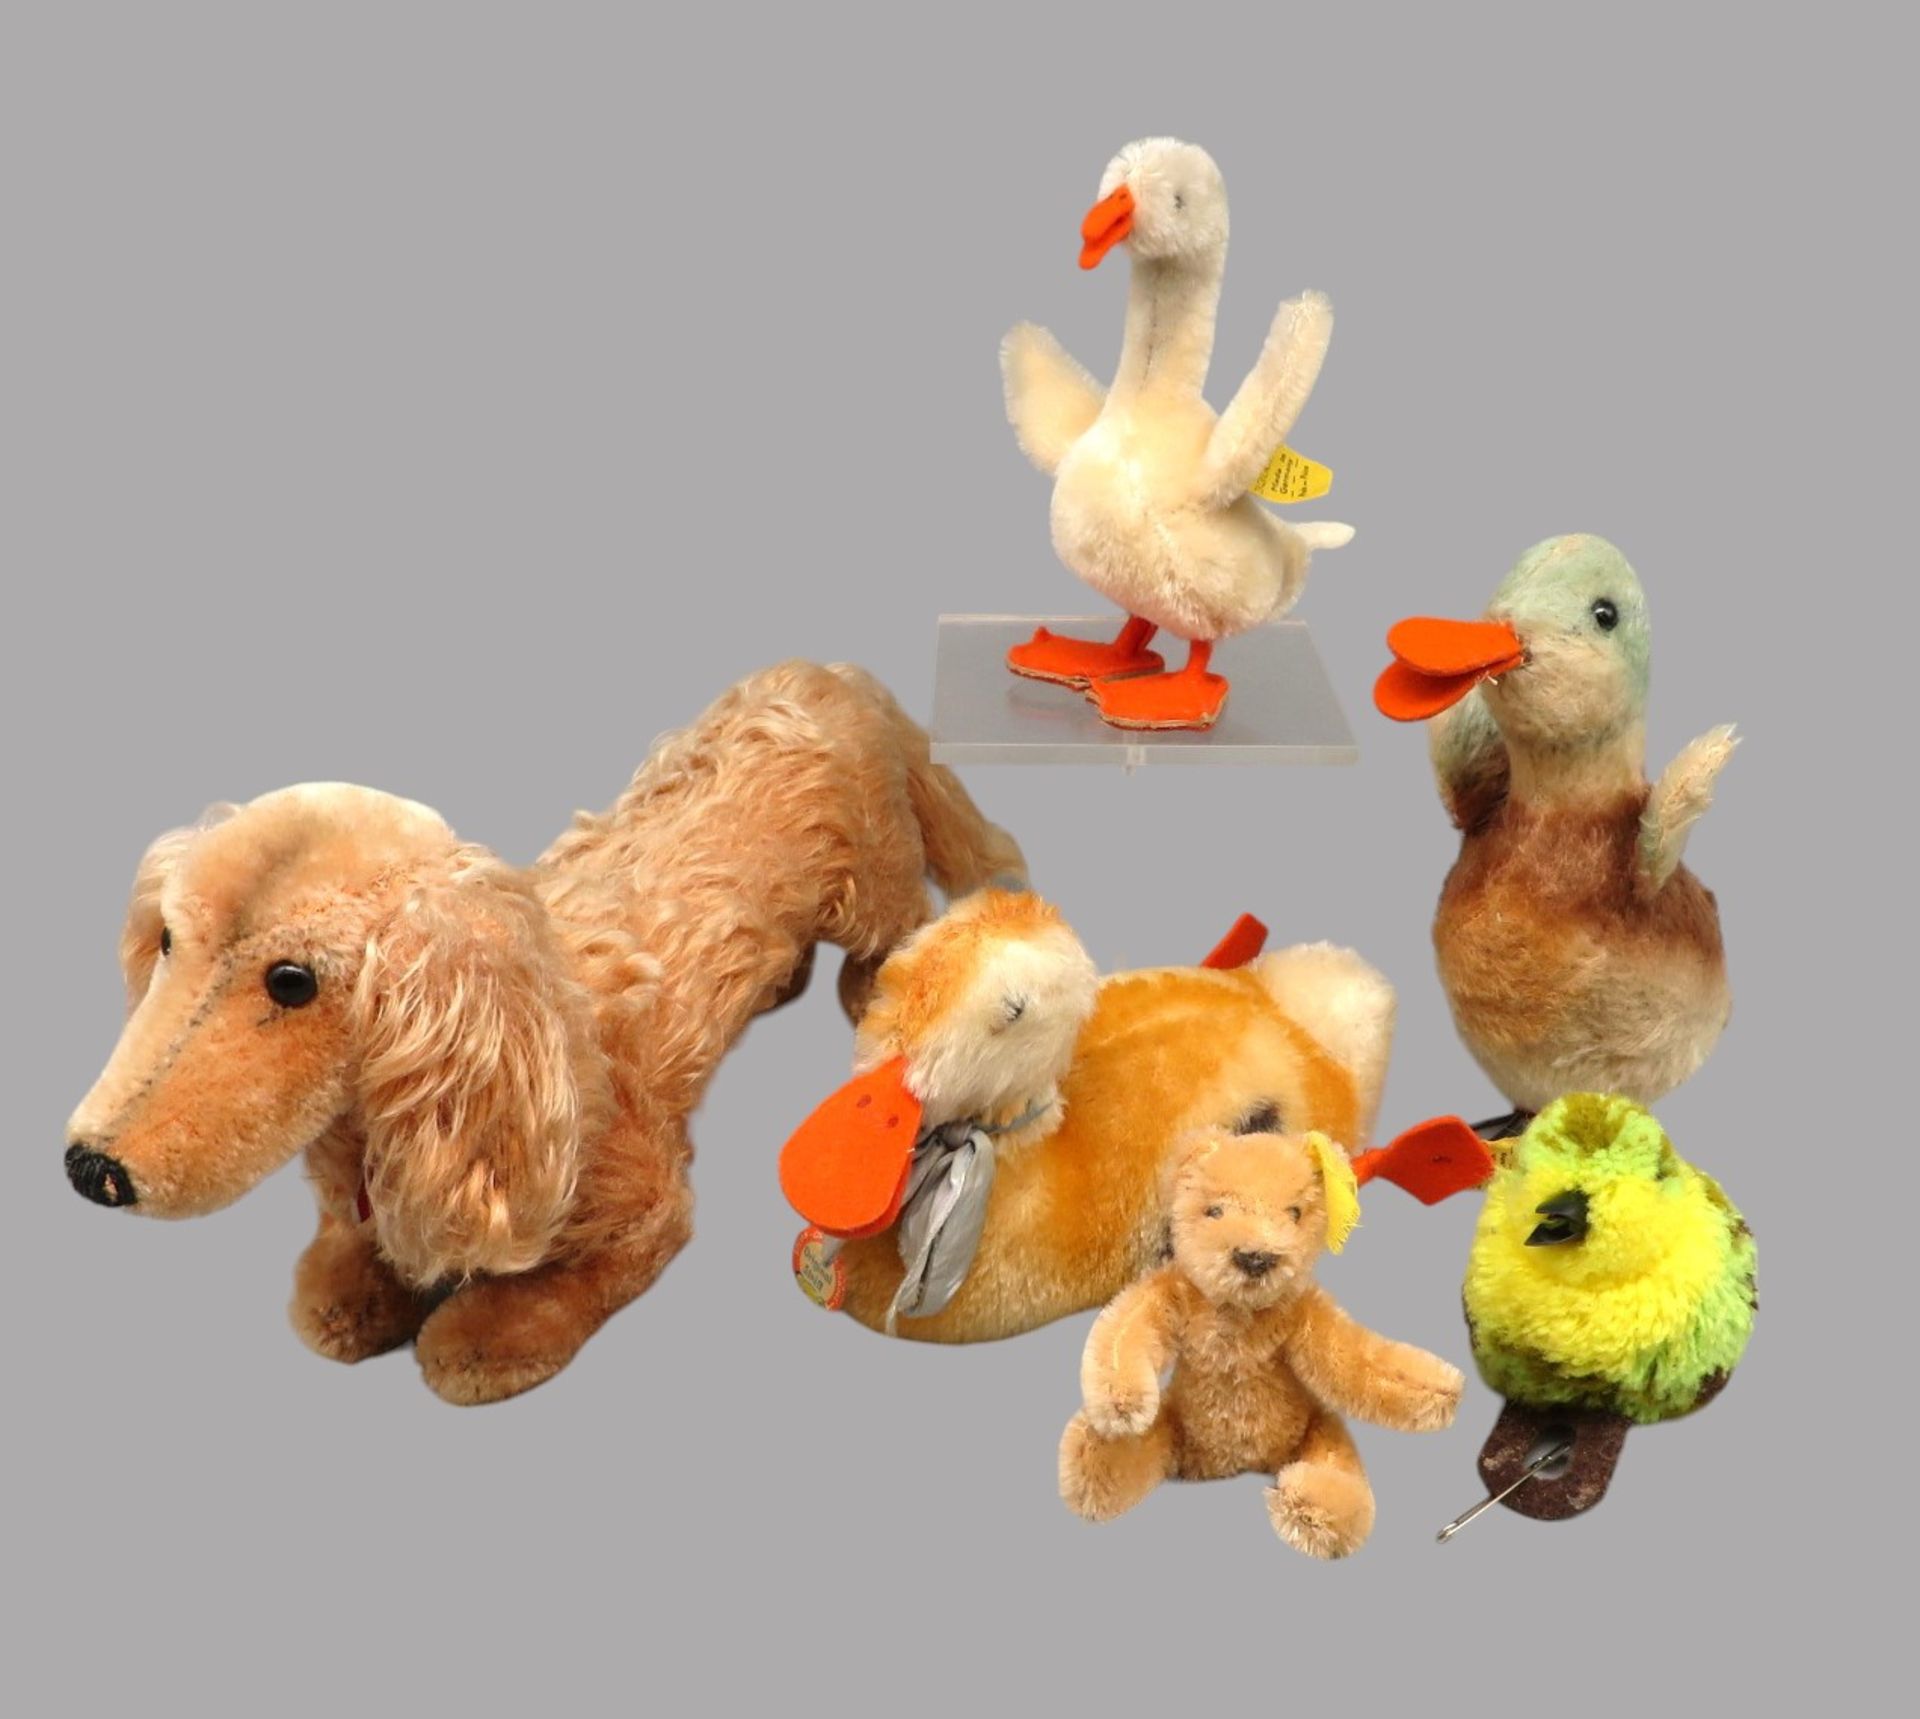 6 diverse Steiff-Tiere, Dackel, drei Enten, kleiner Teddy und Vogel, 5 x mit Knopf im Ohr und Fahne